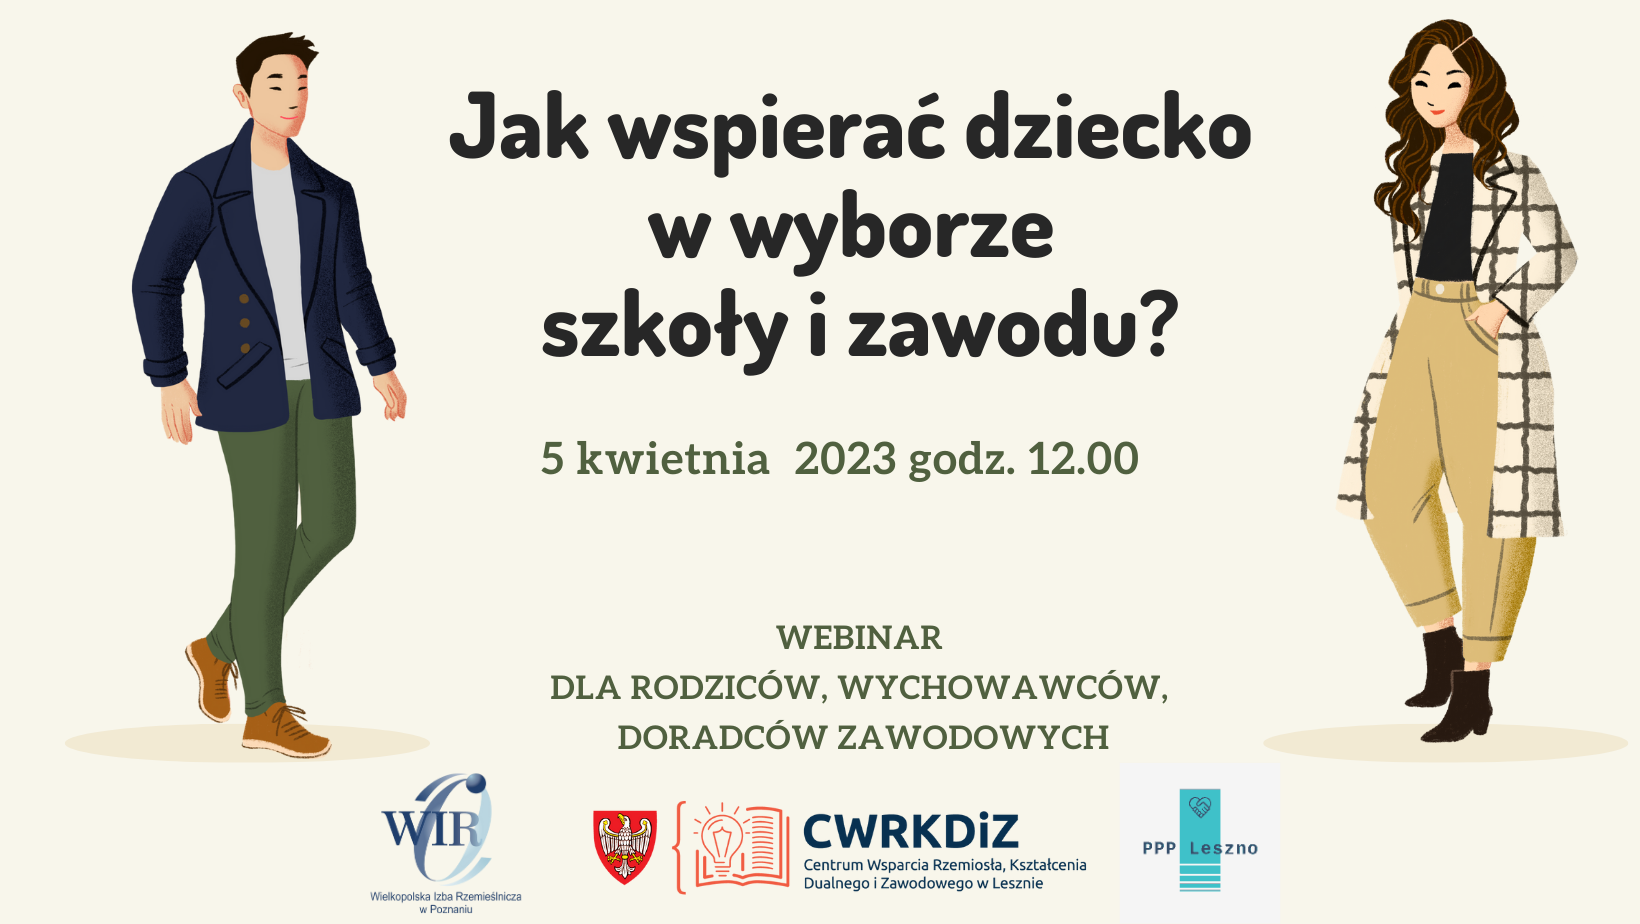 Plakat zachęcający do udziału w webinarze. Na zdjęciu widać kobietę i mężczyznę (grafika wektorowa), krótkie info o webinarze oraz trzy logotypy: WIR Poznań, CWRKDiZ Leszno oraz PPP&nbsp;Leszno.